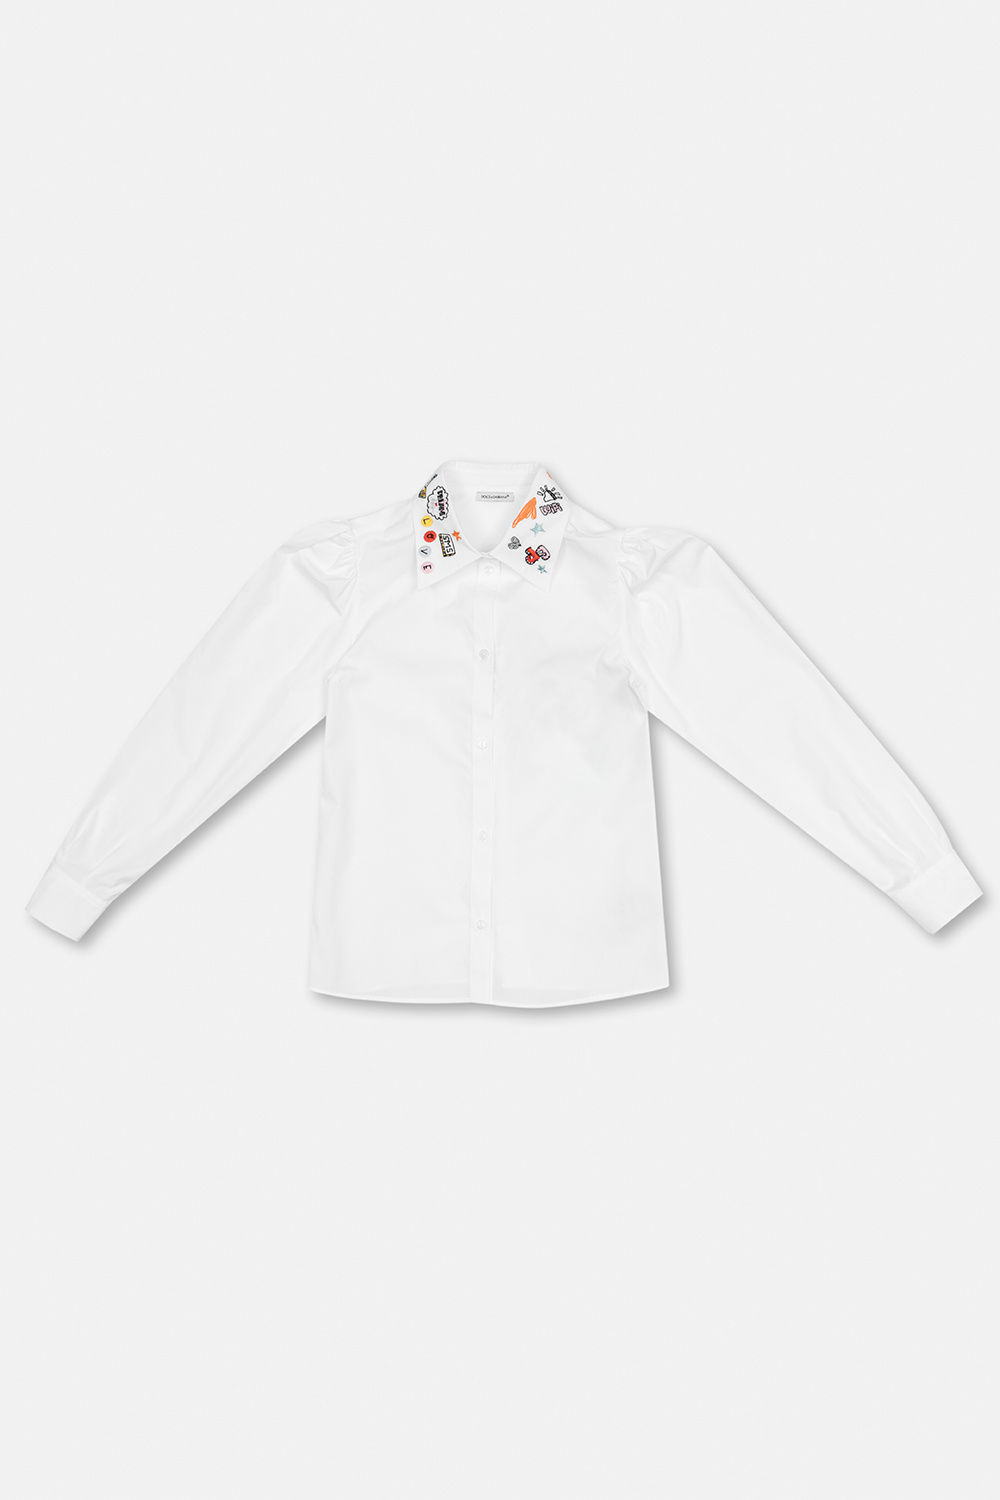 Air Jordan 5 PSG Paris St Germain Shirts Cotton shirt with decorative collar